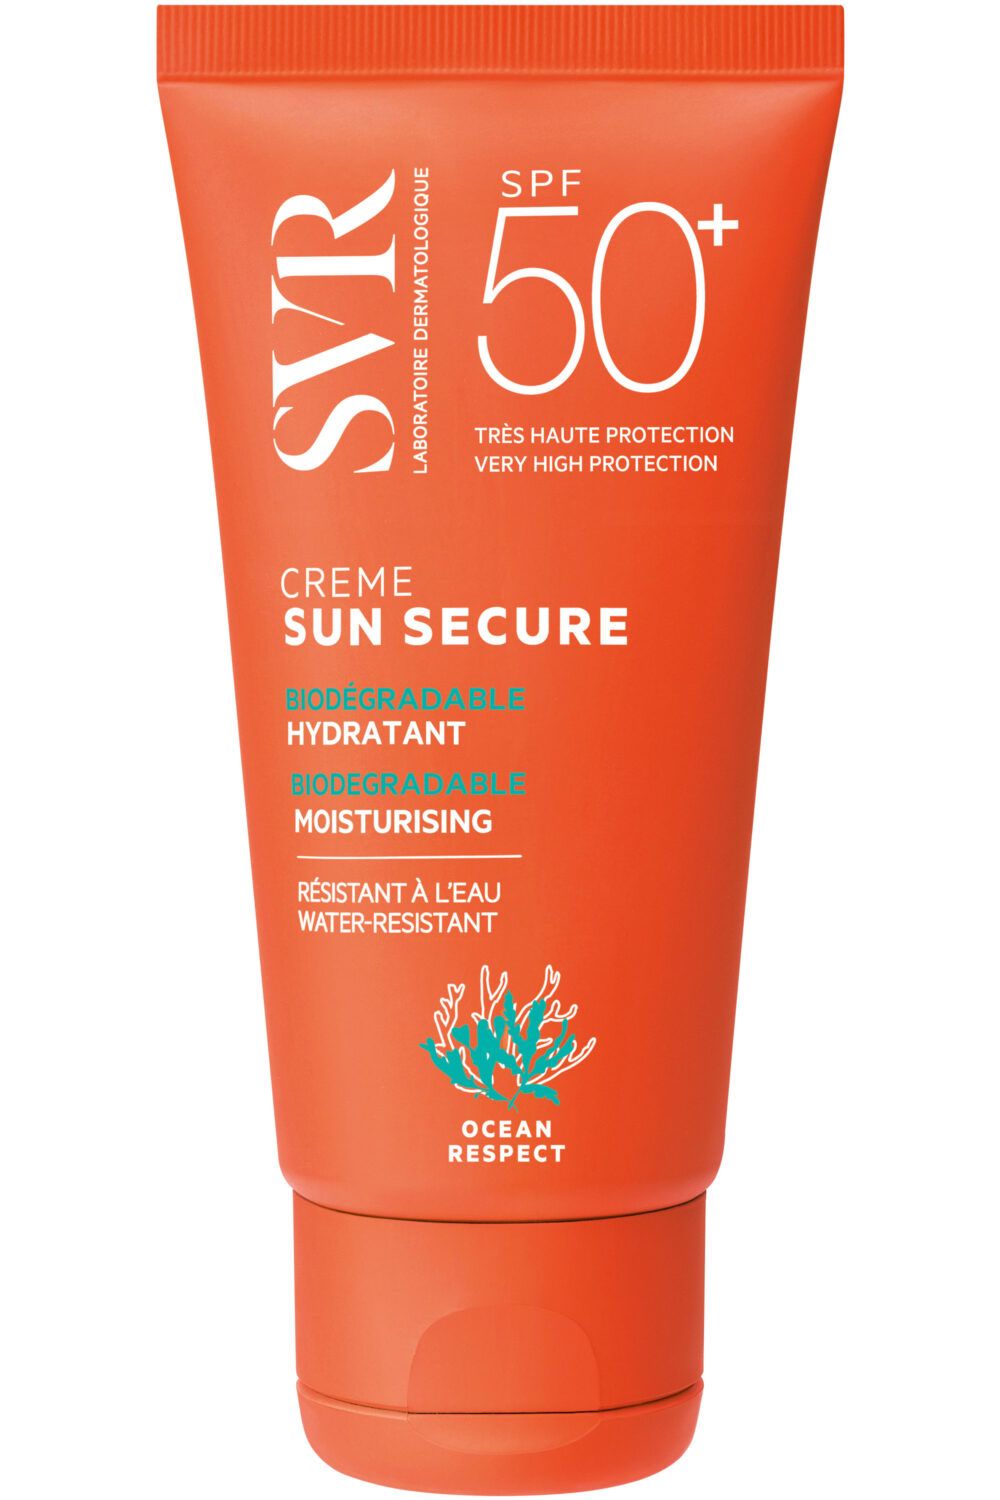 SVR - Crème biodégradable hydratante SPF50+ Sun Secure